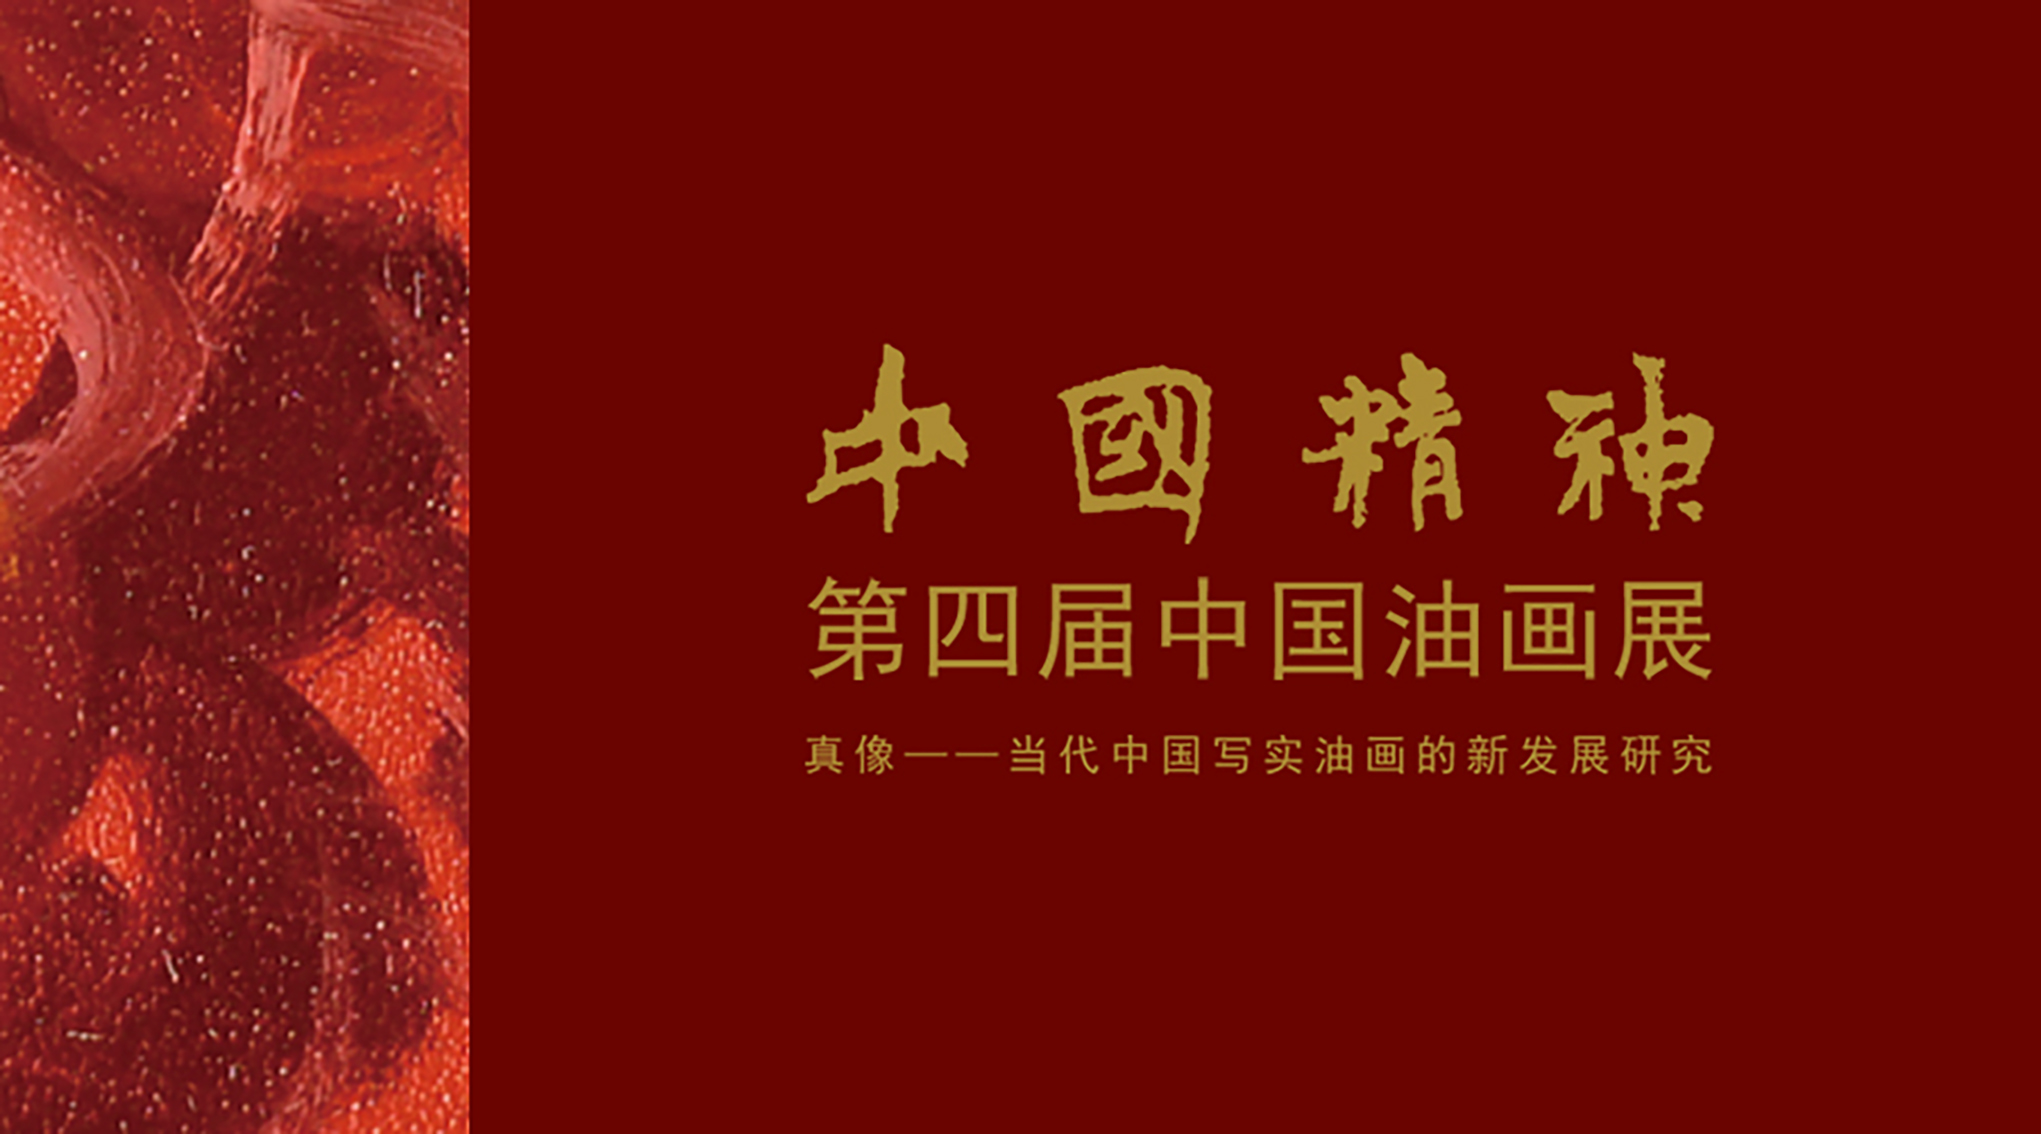 中國精神—第四屆中國油畫展 真像—當代中國寫實油畫的新發展研究